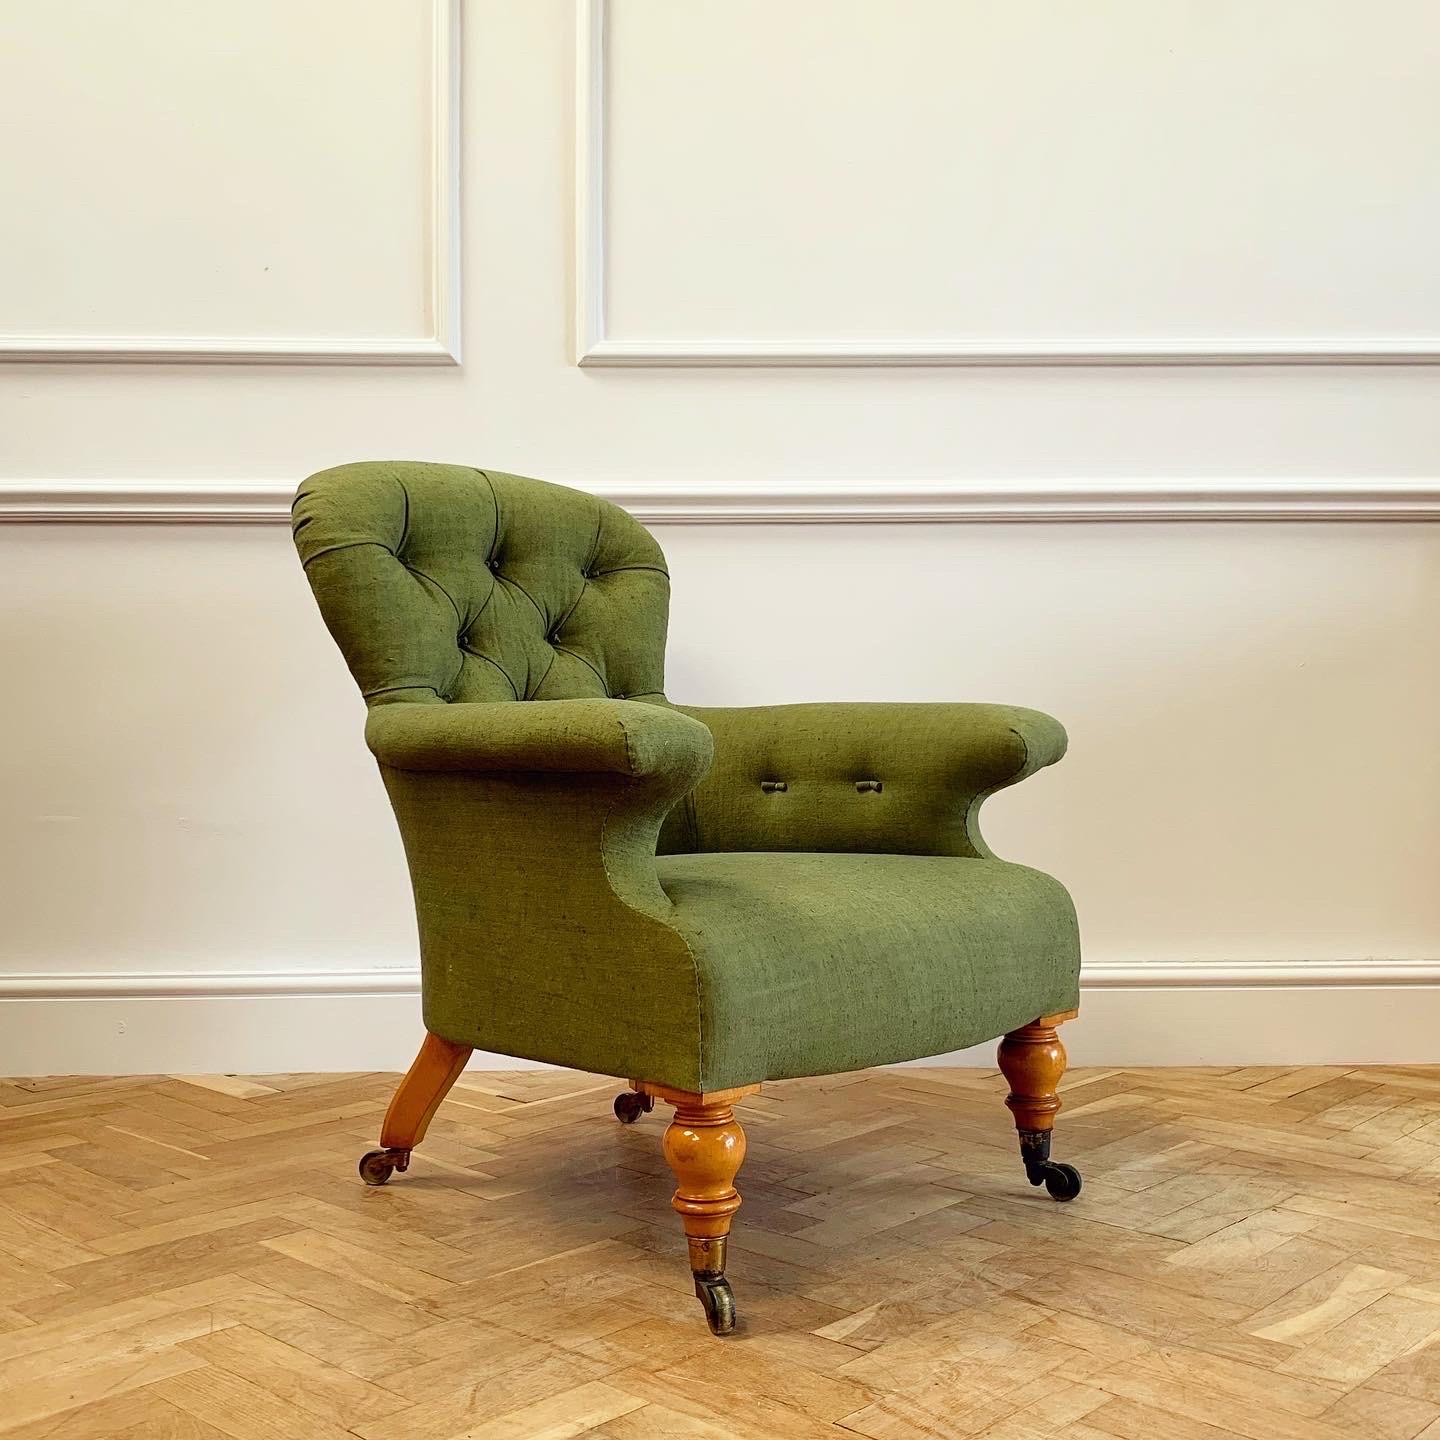 Un élégant fauteuil rembourré Hindley & Sons avec des pieds en bois de satin, nouvellement recouvert de lin ancien teint naturellement en vert bouteille.

Anglais, début du XIXe siècle.